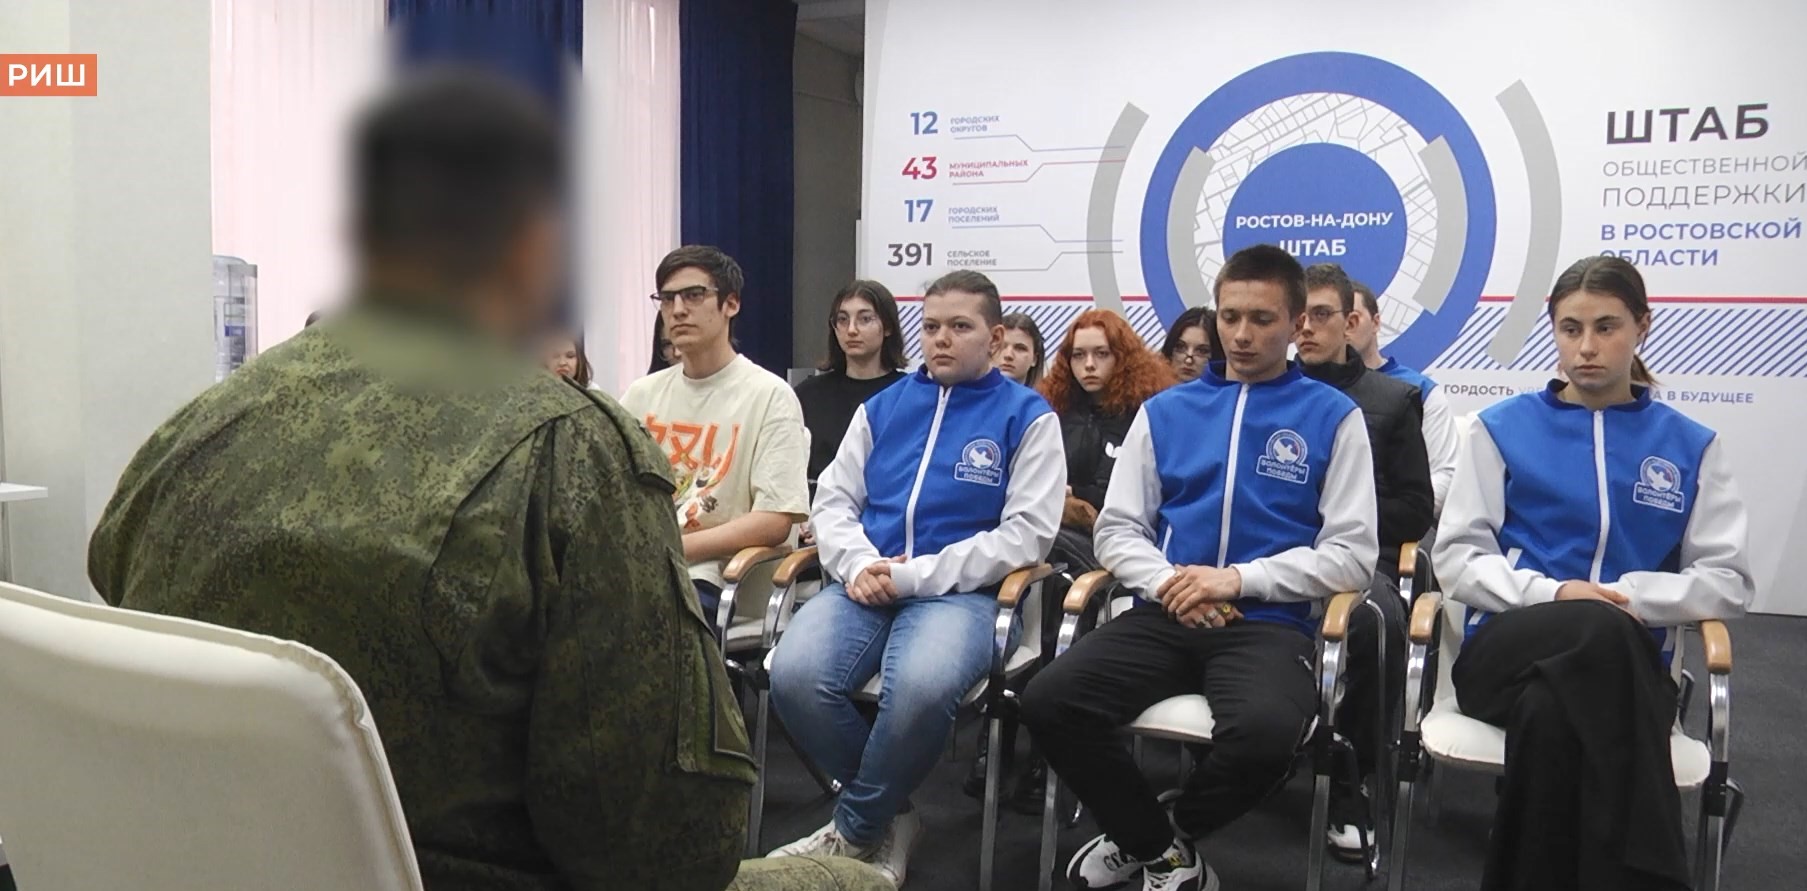 Диалог с героем: ростовские студенты встретились с участником СВО